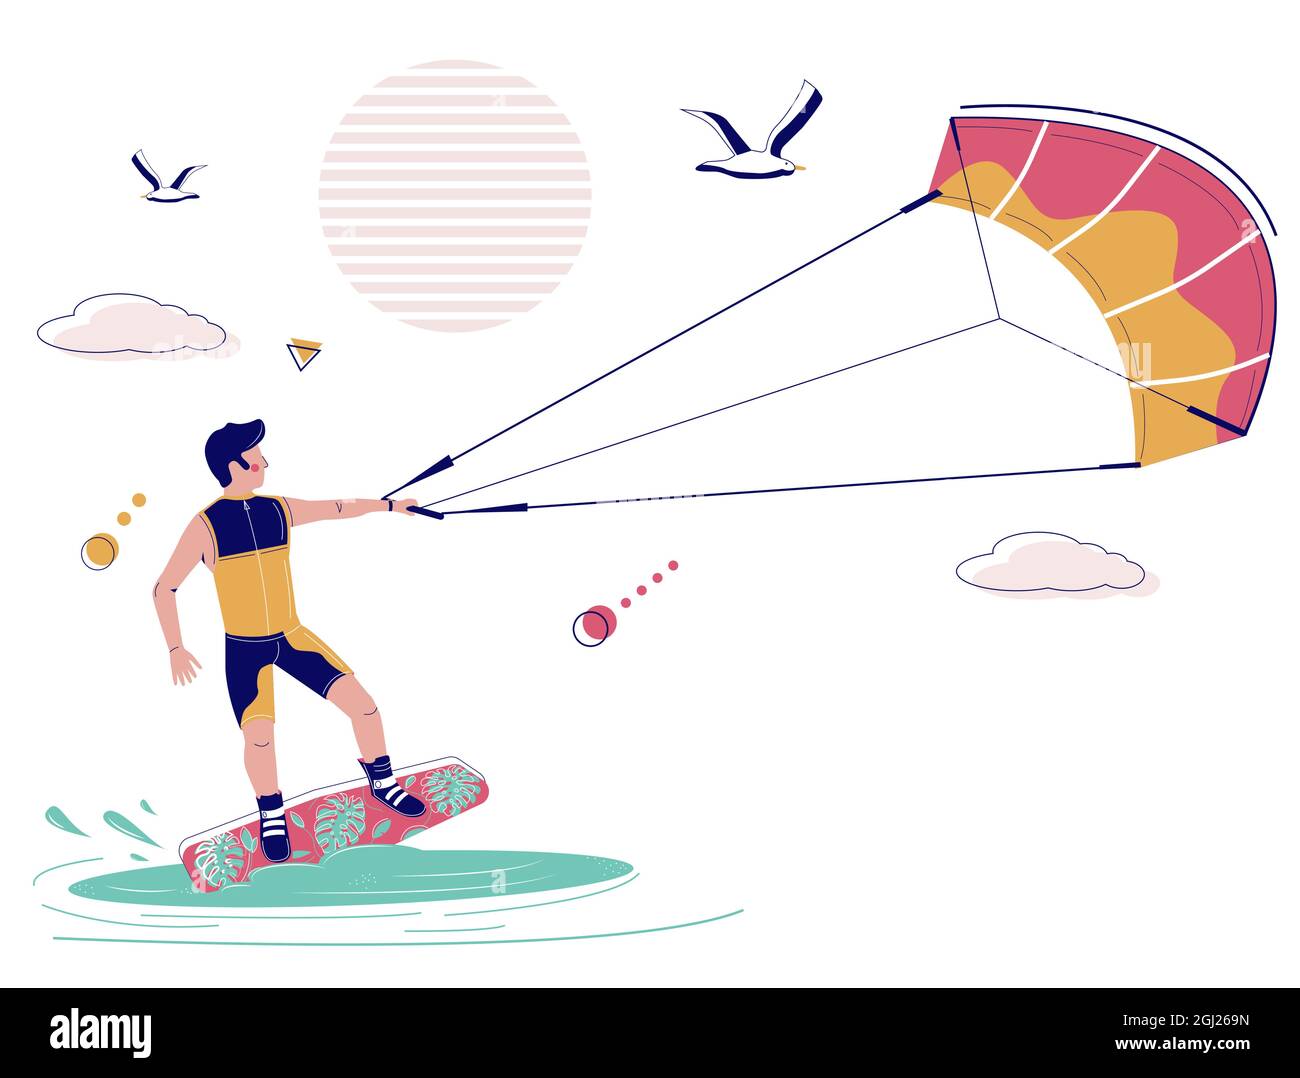 Kiteboarder sur le kitboard tiré à travers l'eau par le cerf-volant, illustration vectorielle. Kiteboarding, kitesurf sports extrêmes d'eau Illustration de Vecteur